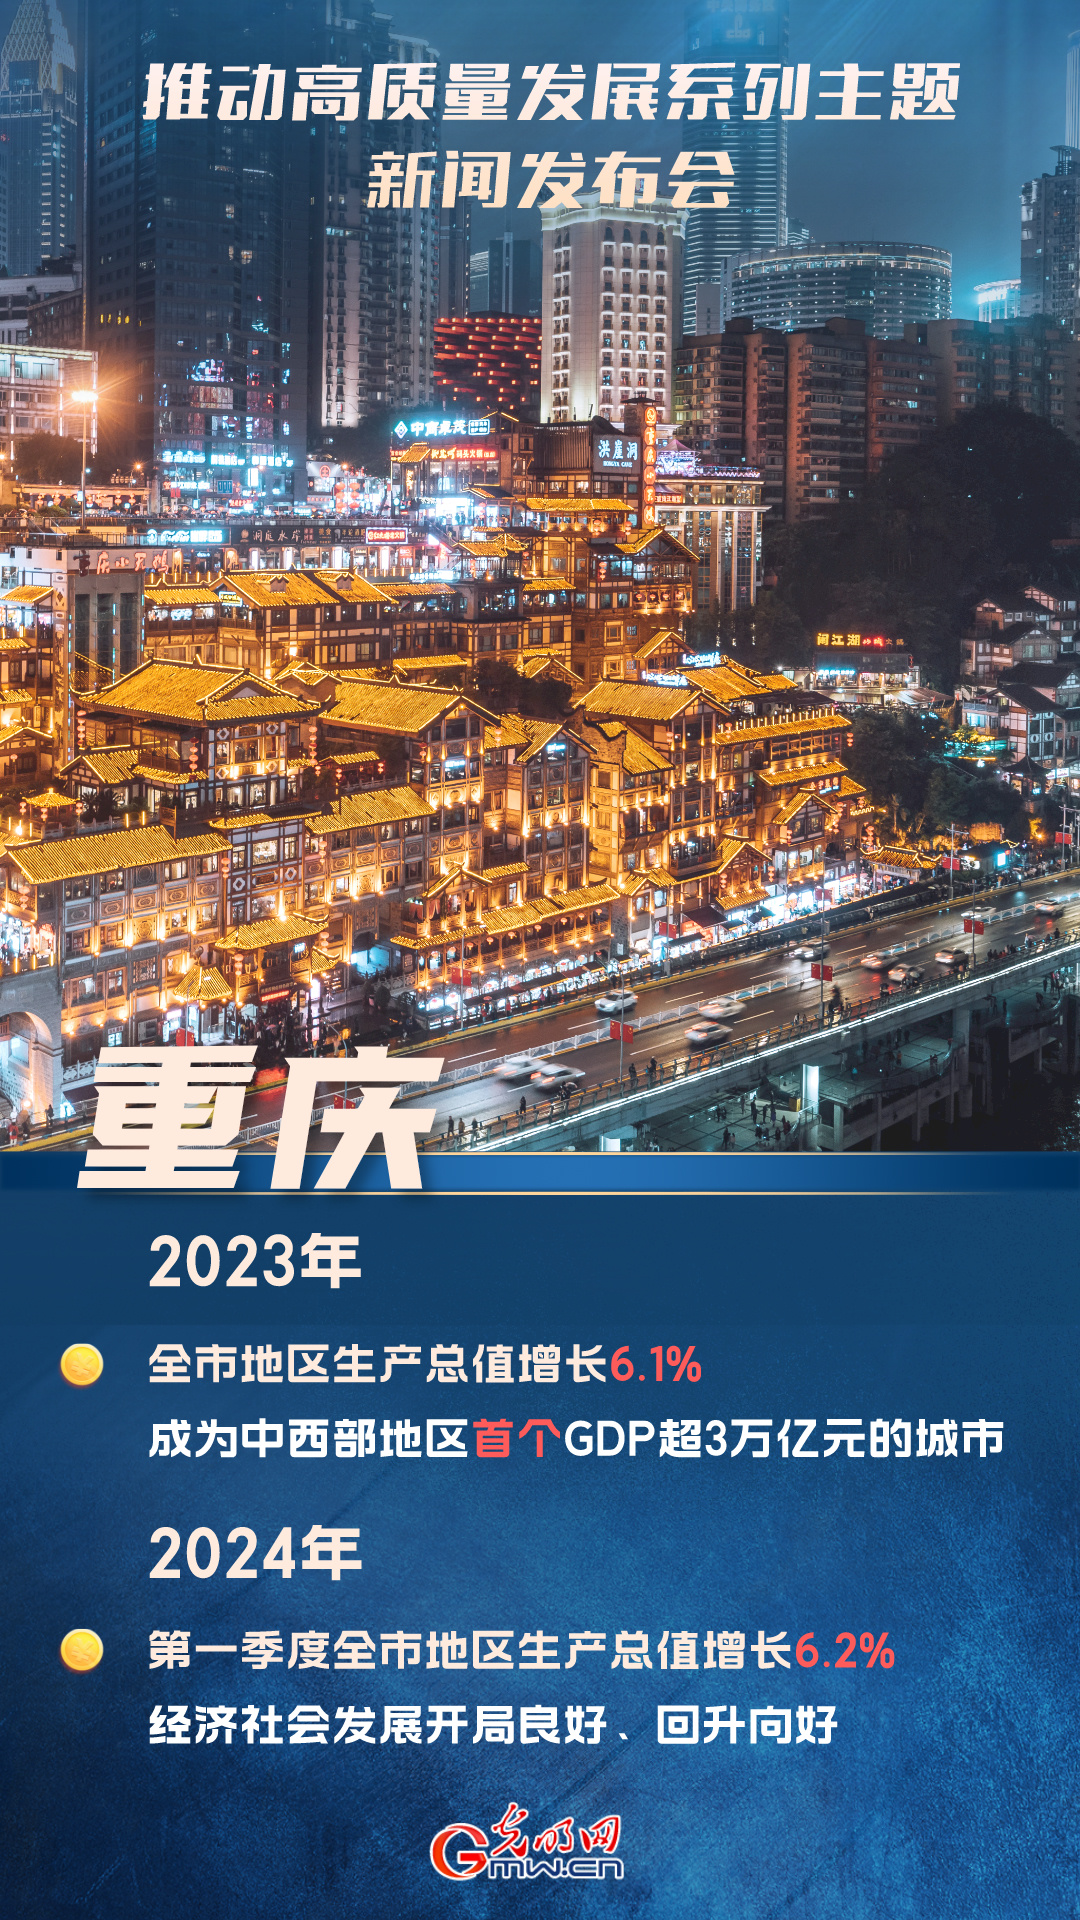 【推动高质量发展】重庆成为中西部地区首个GDP超3万亿元城市